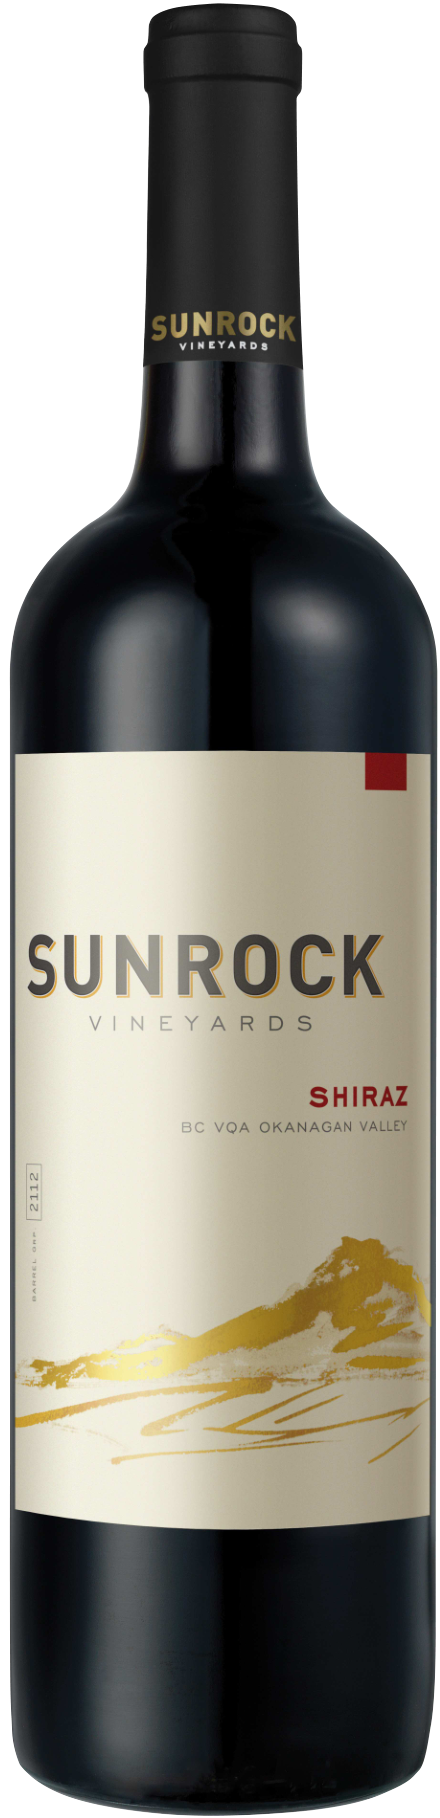 Sunrock Shiraz 2020